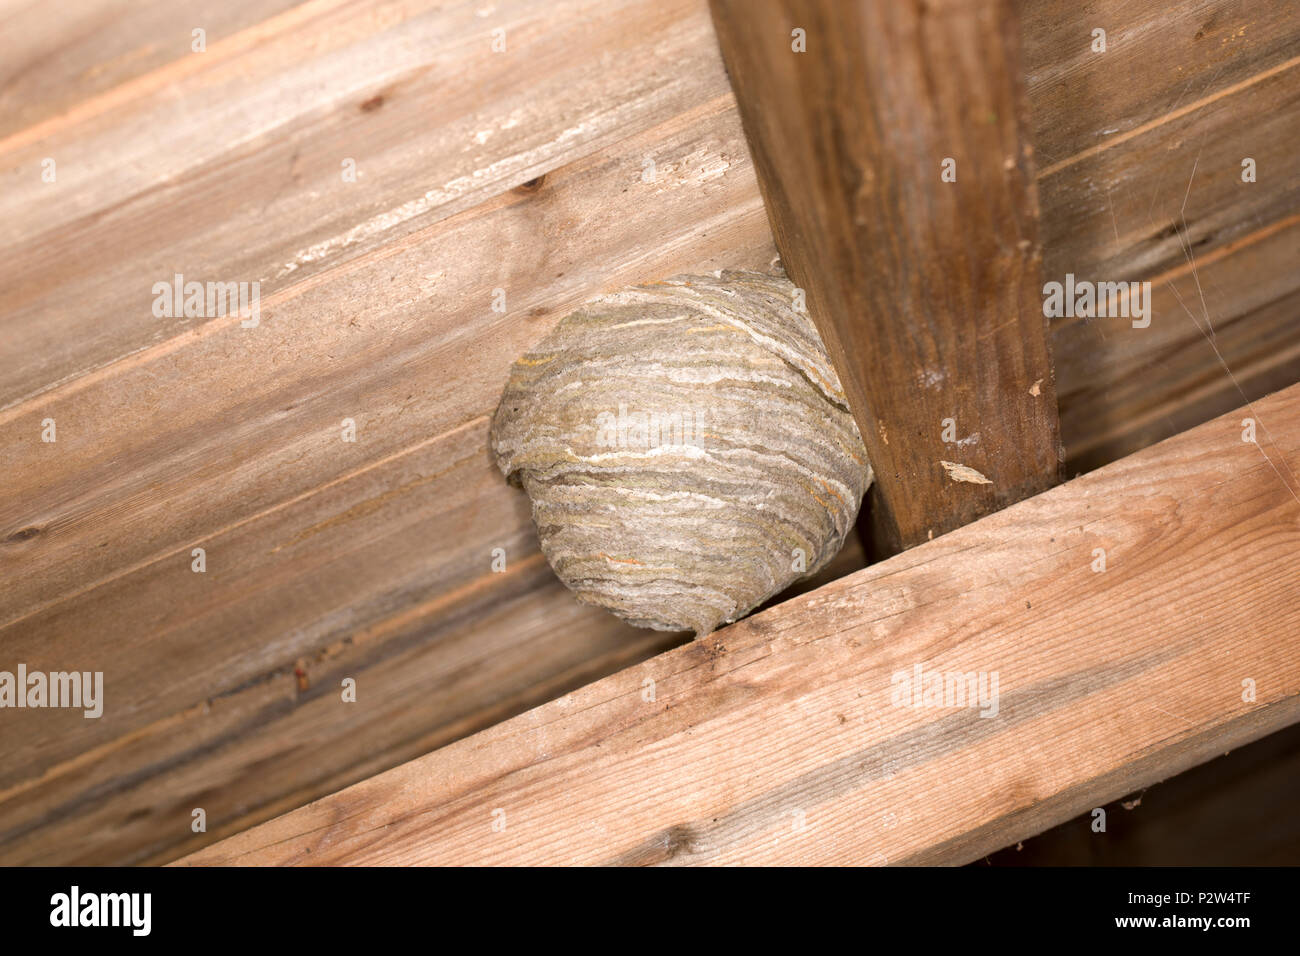 Ein Wespennest, in das Dach einer alten hölzernen Gartenhäuschen gebaut wurde. Die Wespen, die das Nest gebaut erscheinen die Beschreibung für Dolichove übereinstimmen Stockfoto